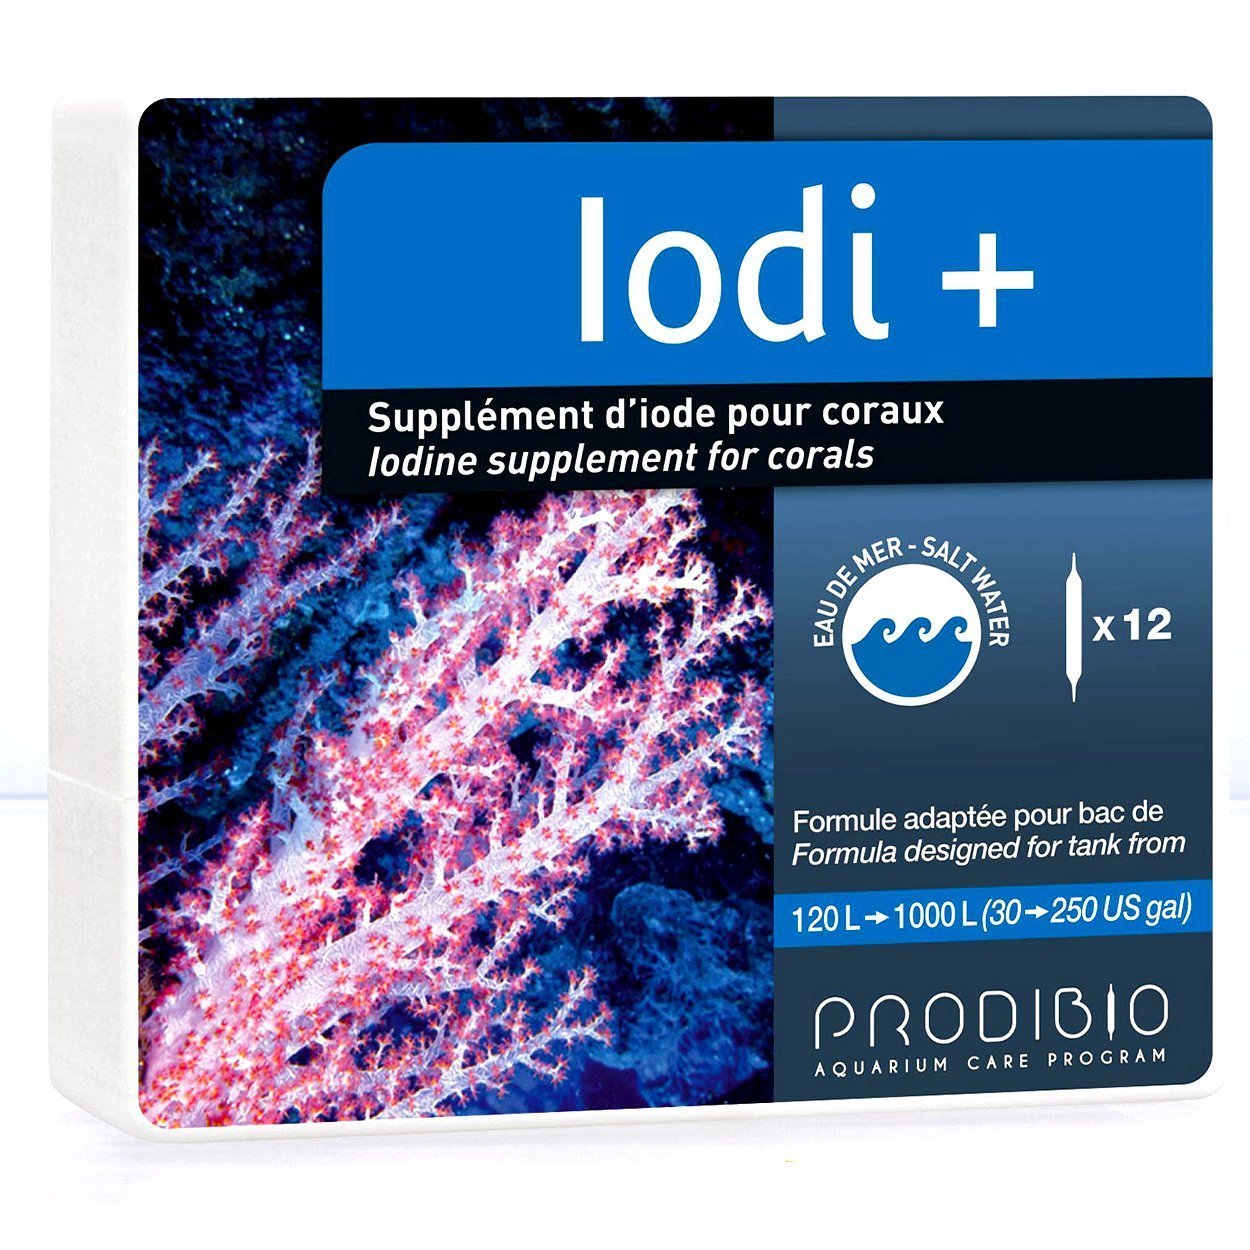 Prodibio - Iodi+ 12 pcs